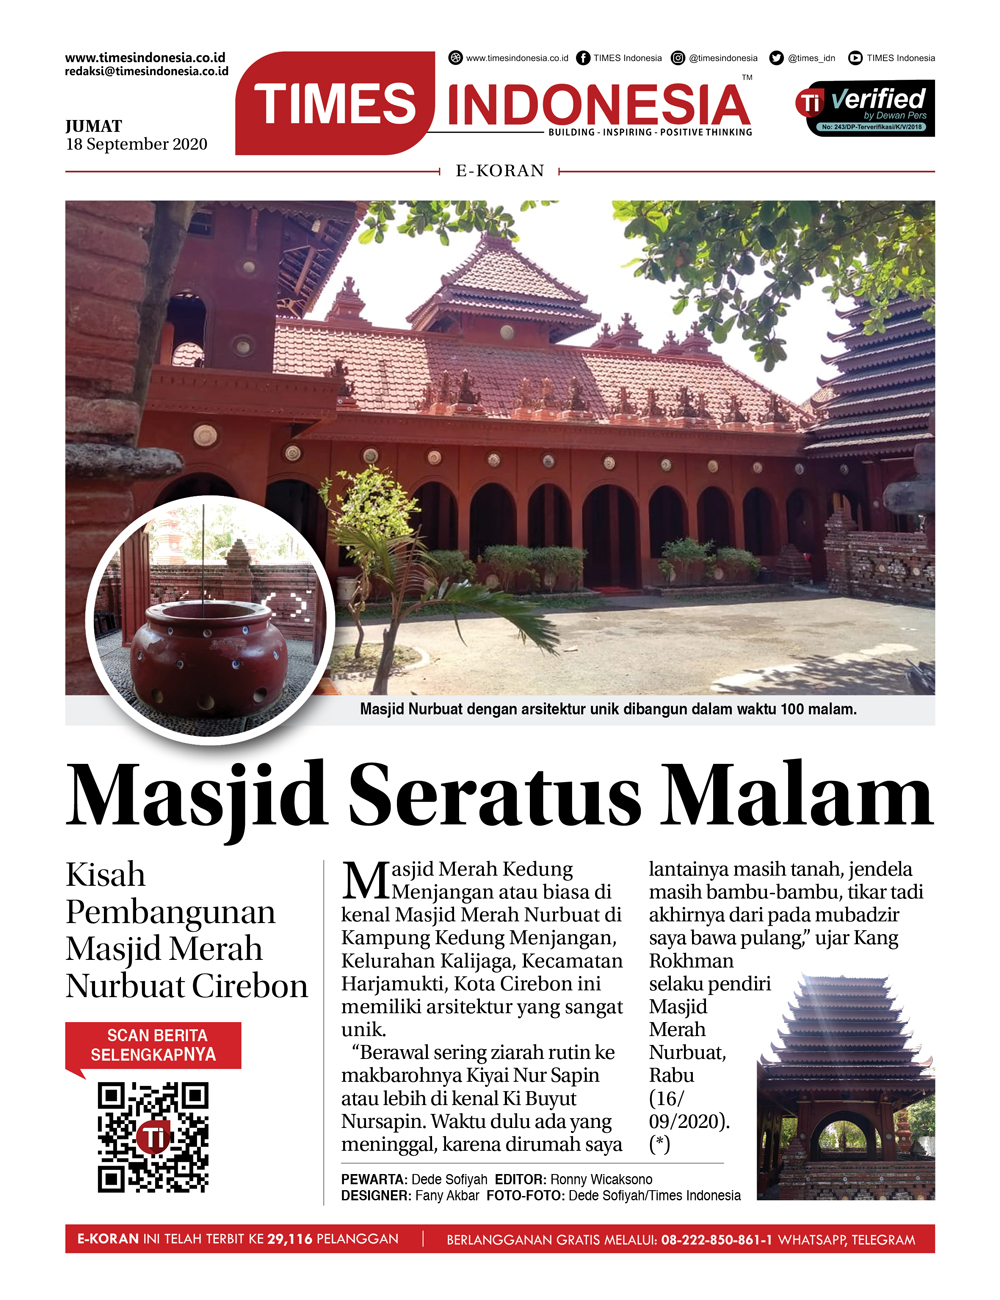 Edisi-Jumat-18-September-2020-Masjid-Merah-Nurbuat-Cirebon.jpg